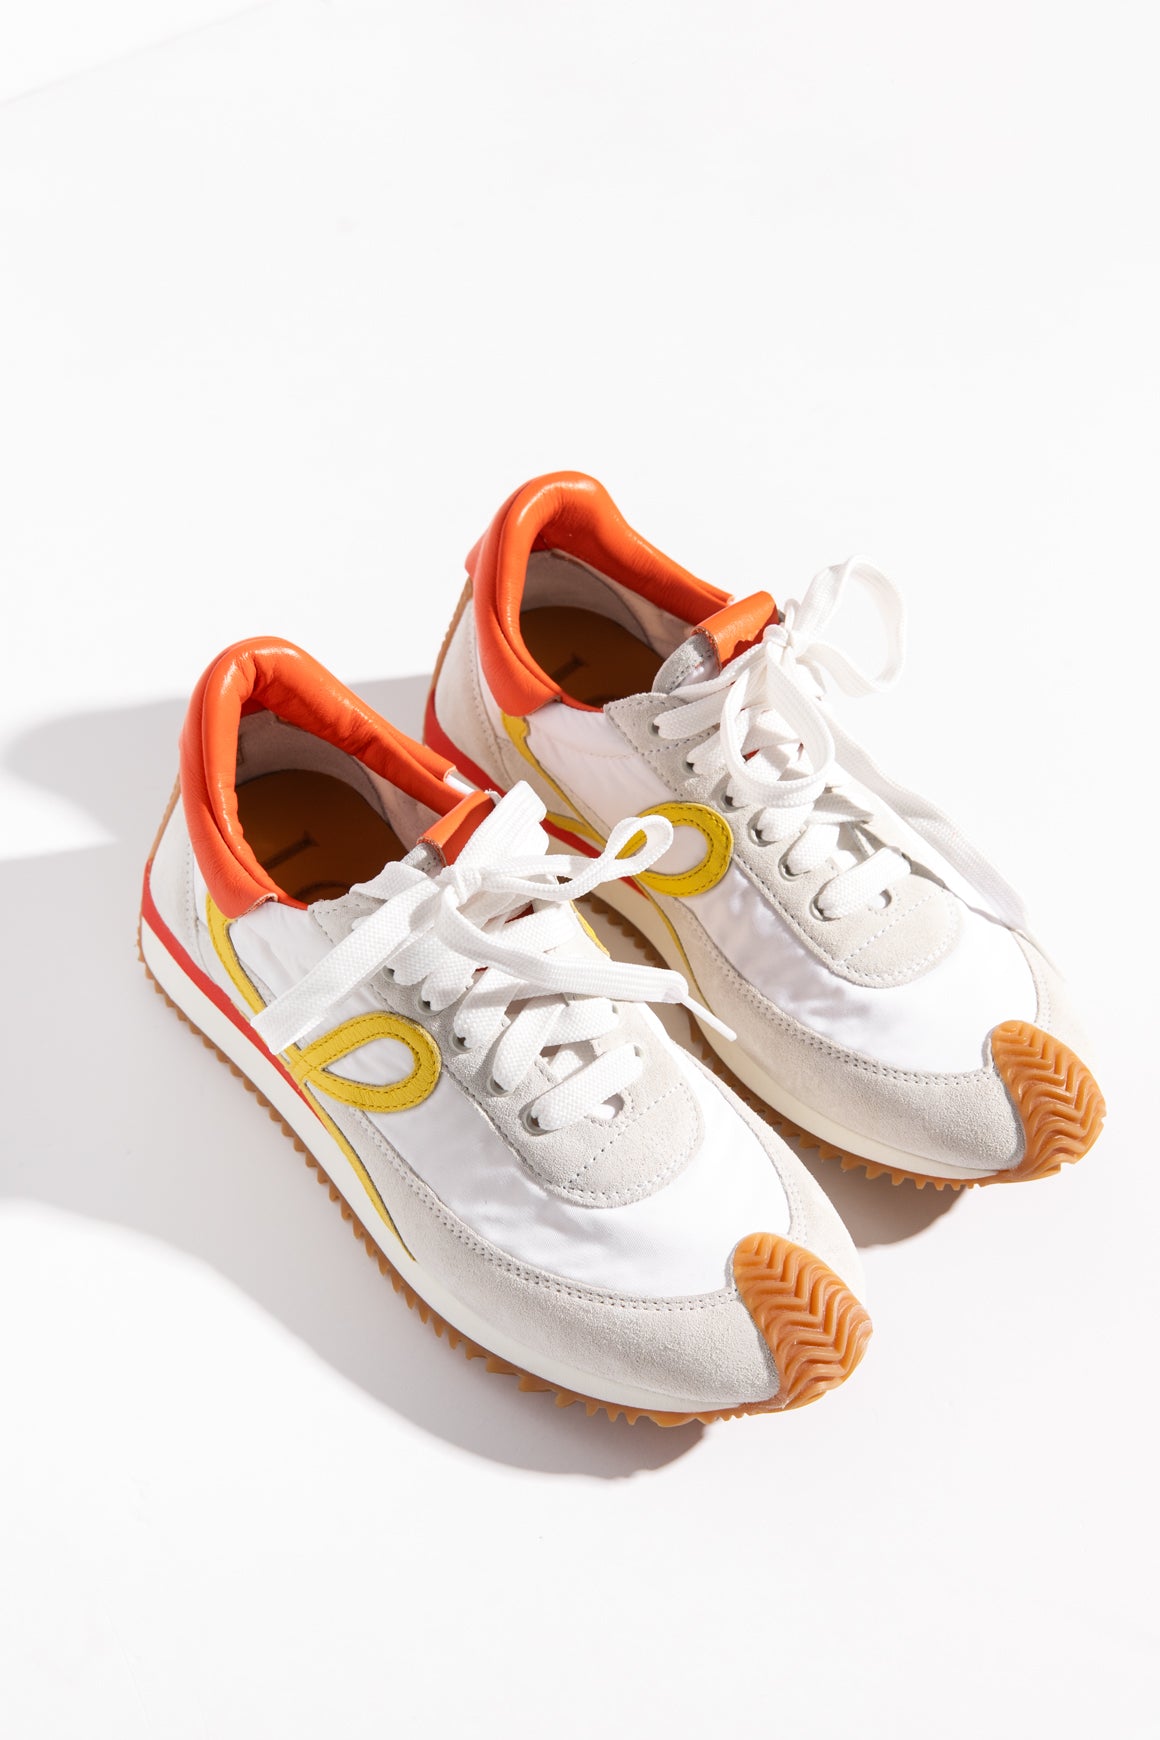 LOEWE Orange & White Sneakers (Sz. 36)